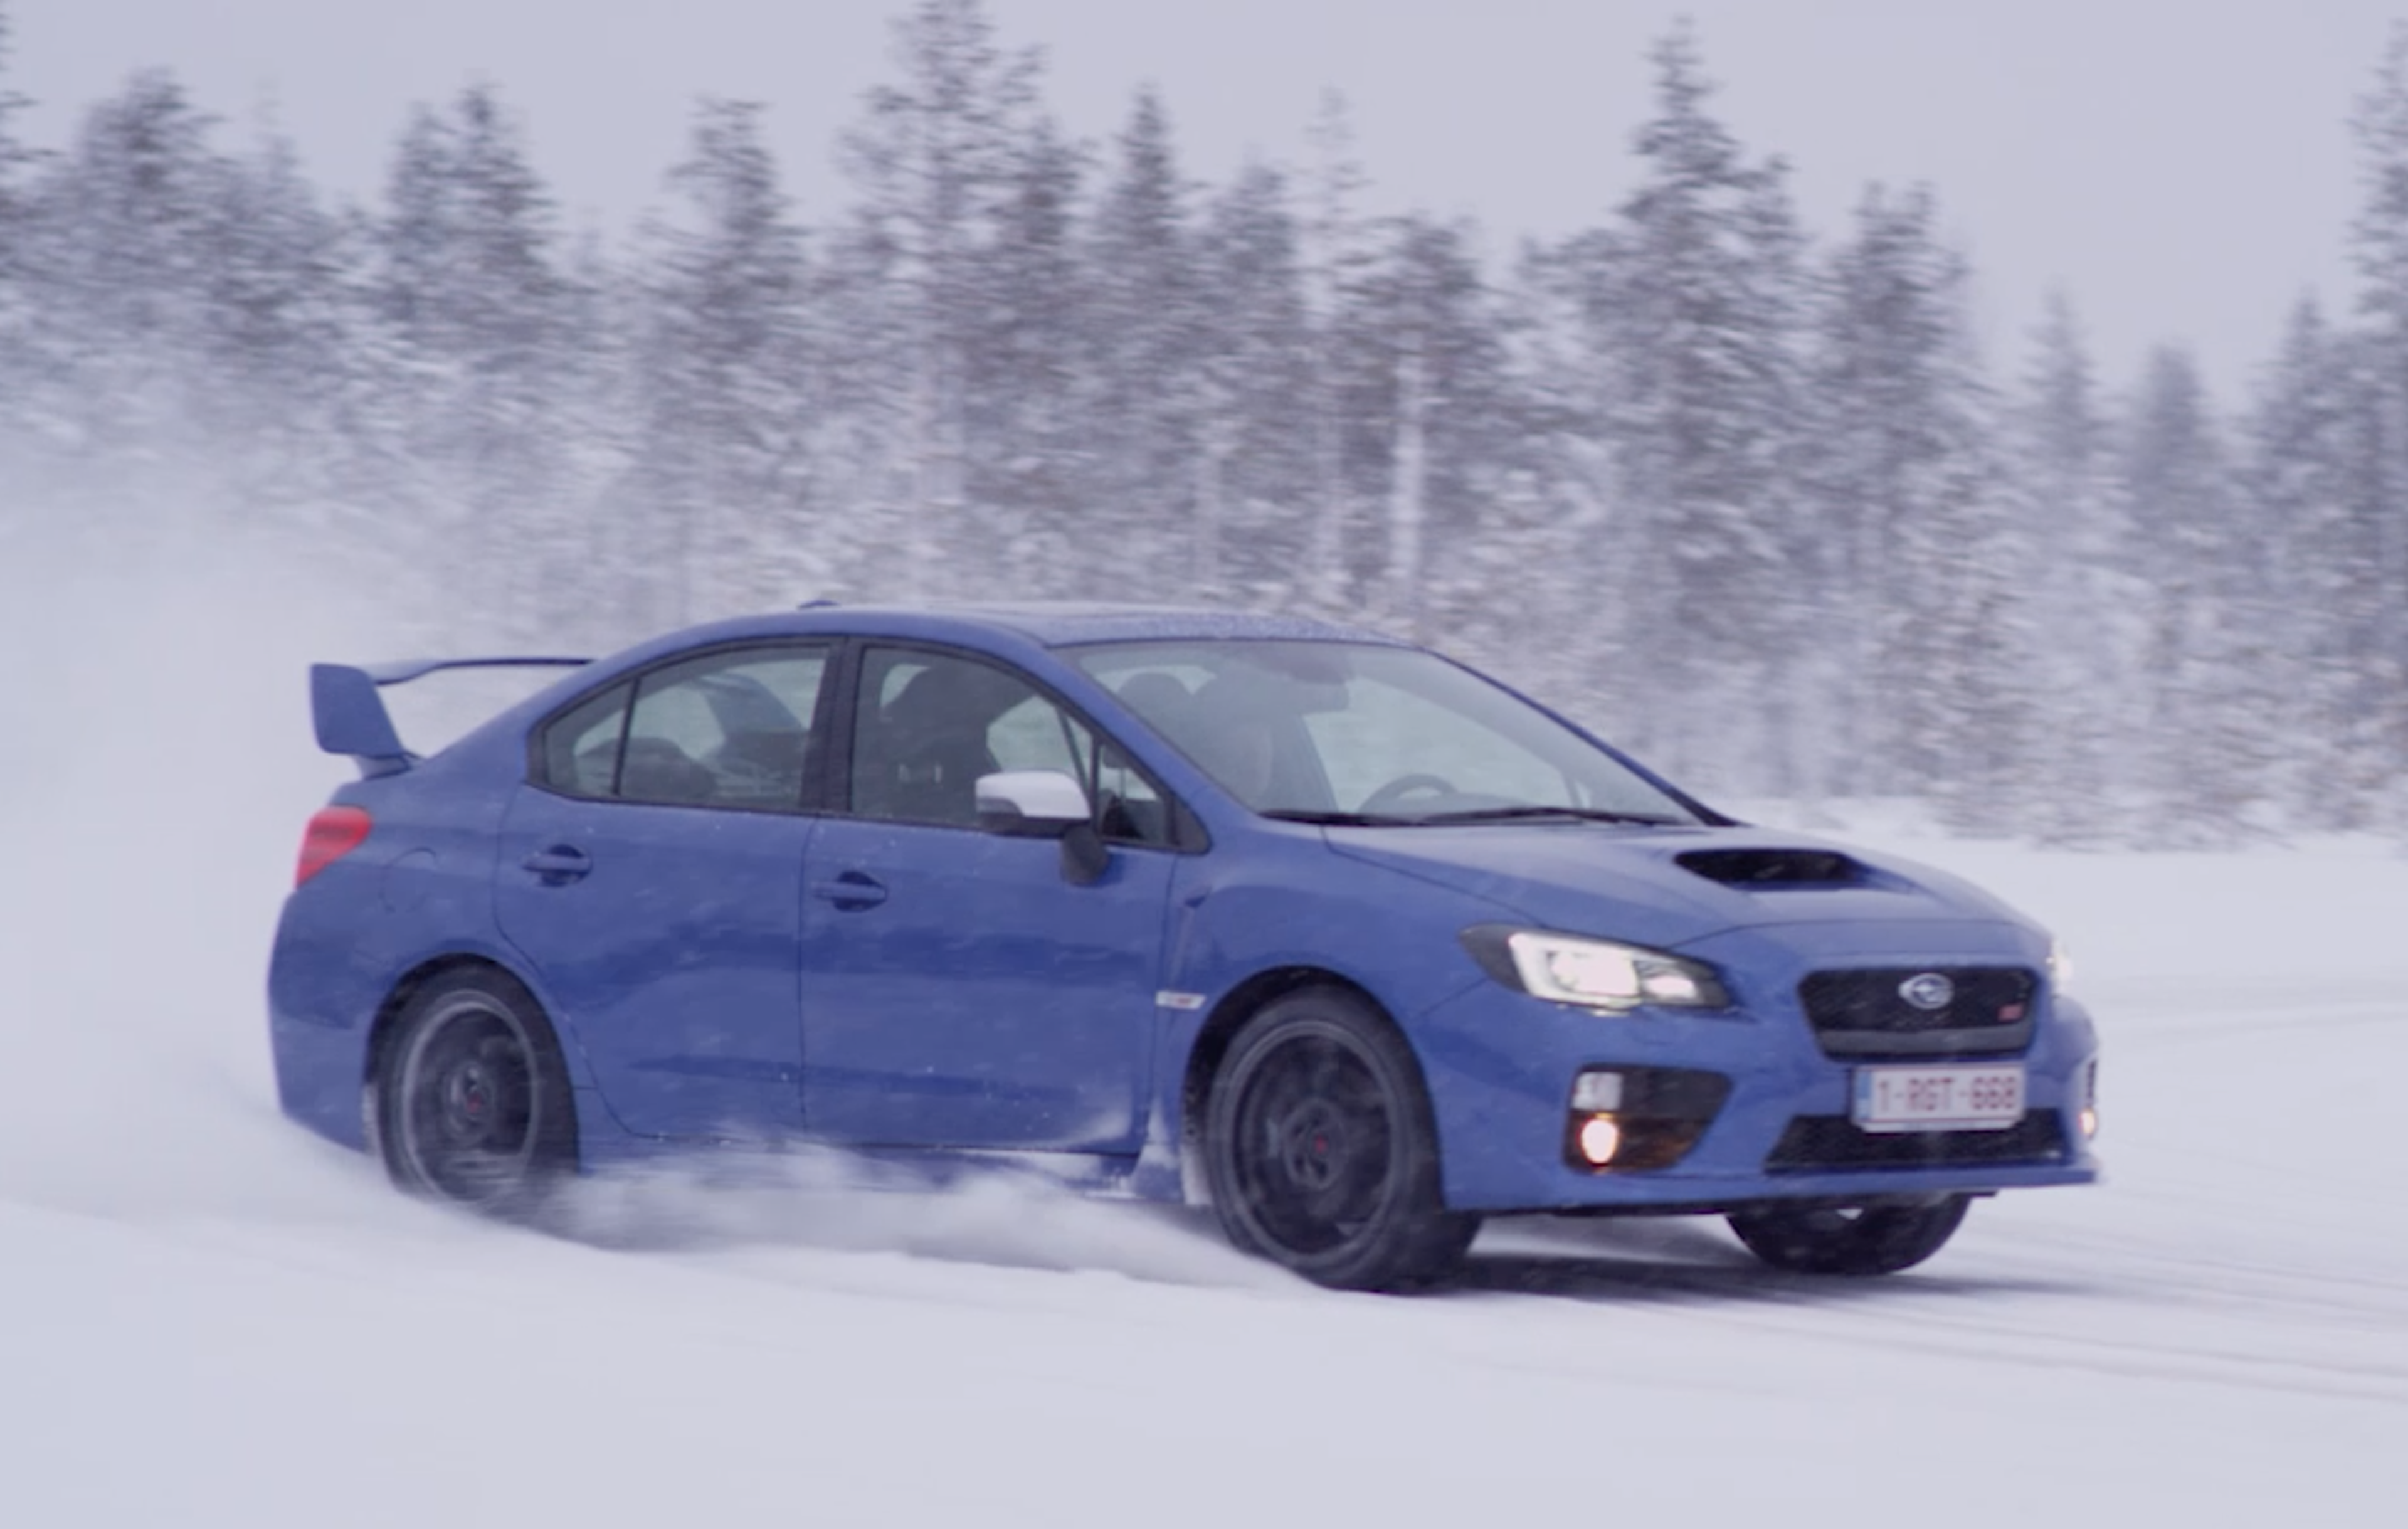 VÍDEO: ¡Flipa! A fondo en hielo con un Subaru WRX STI